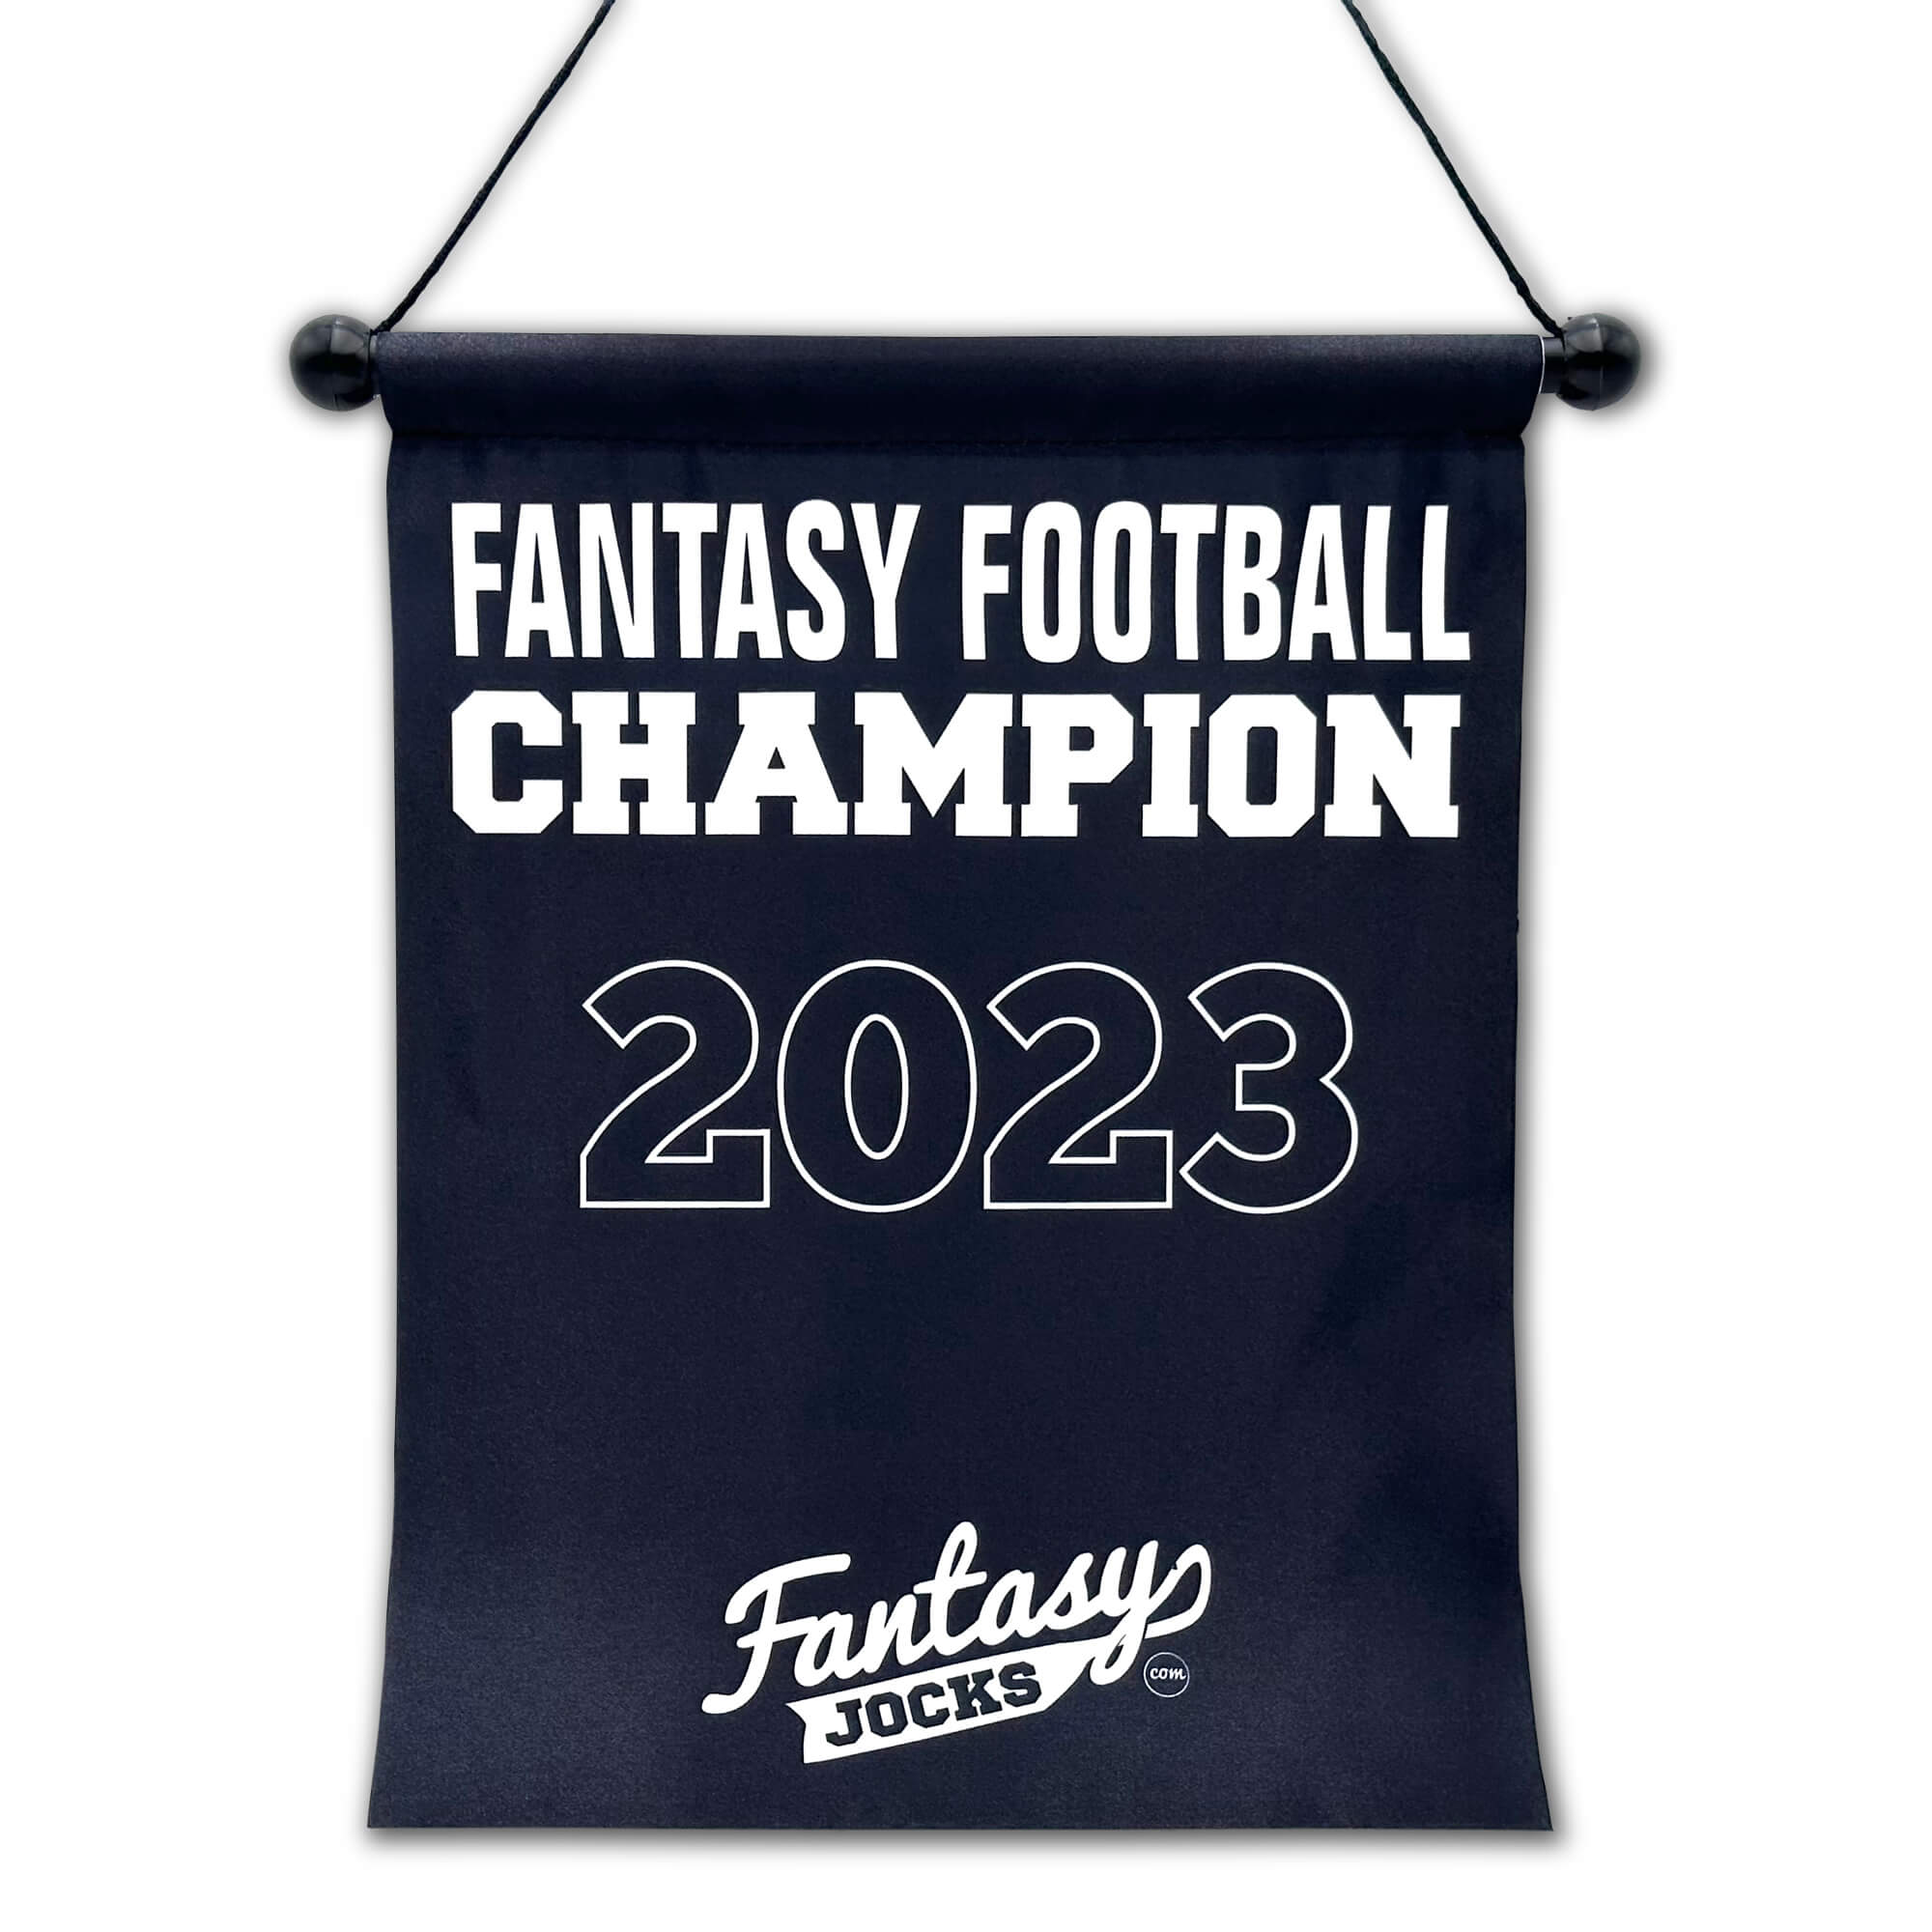 Manager Kit - Football Draft Board Fantasy Football Draft Kit FantasyJocks   